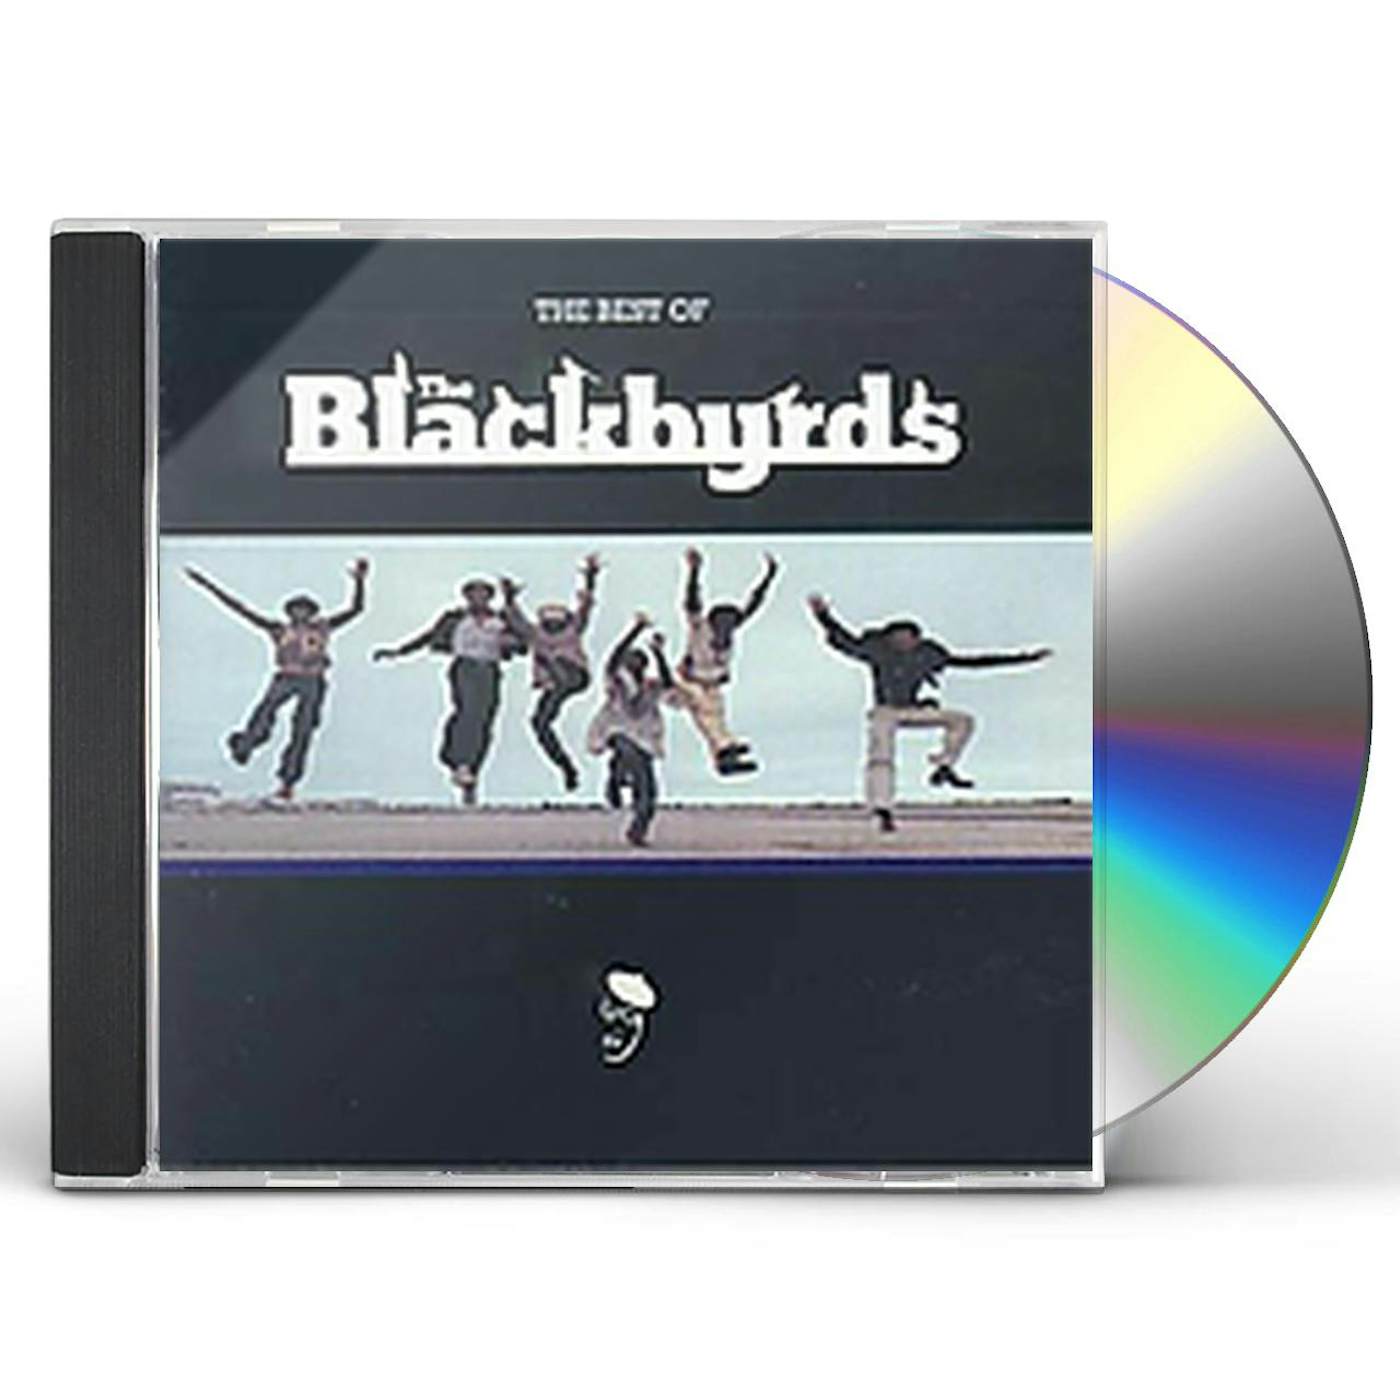 BEST OF The Blackbyrds CD